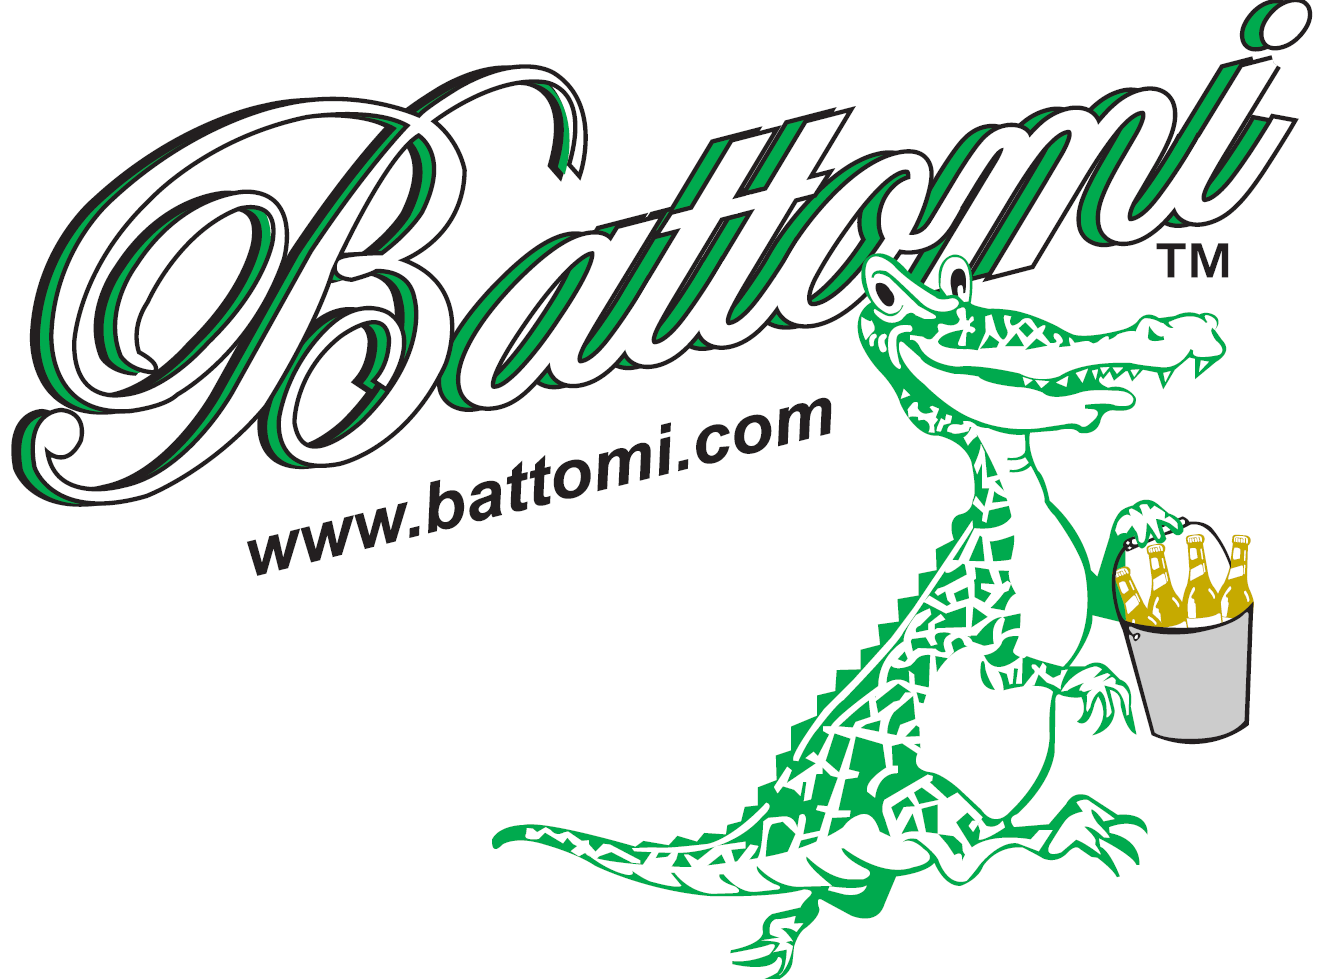 Battomi.com